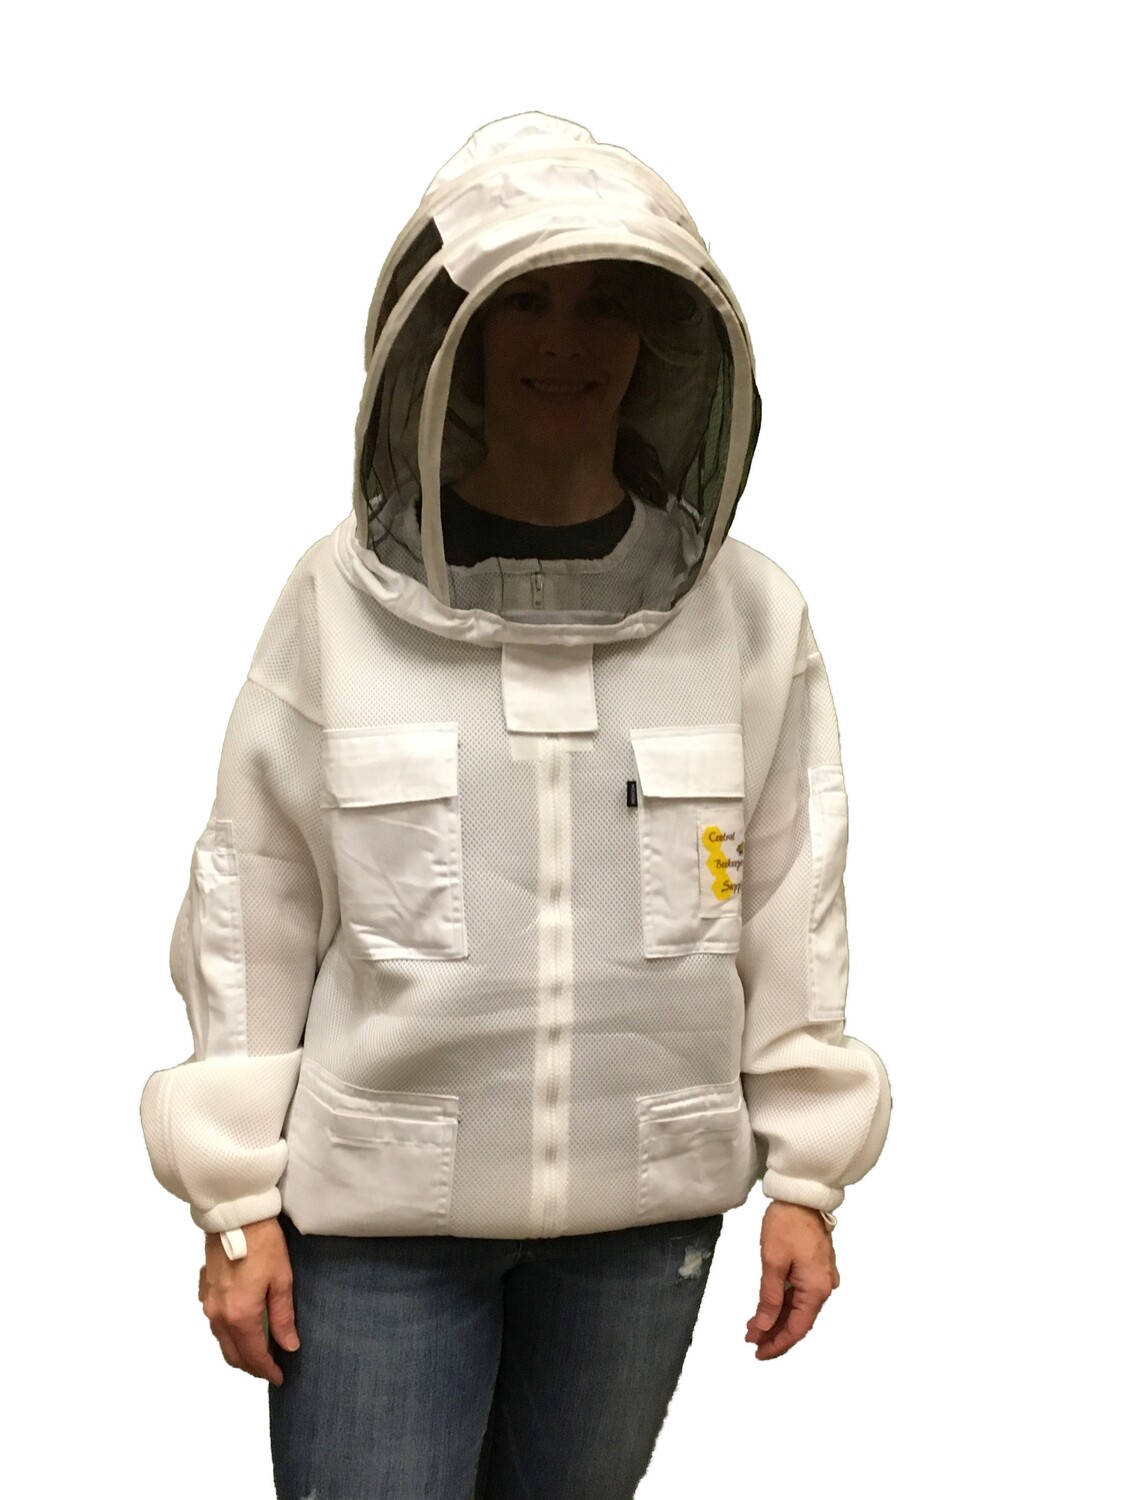 Kool Mesh Bee Jacket